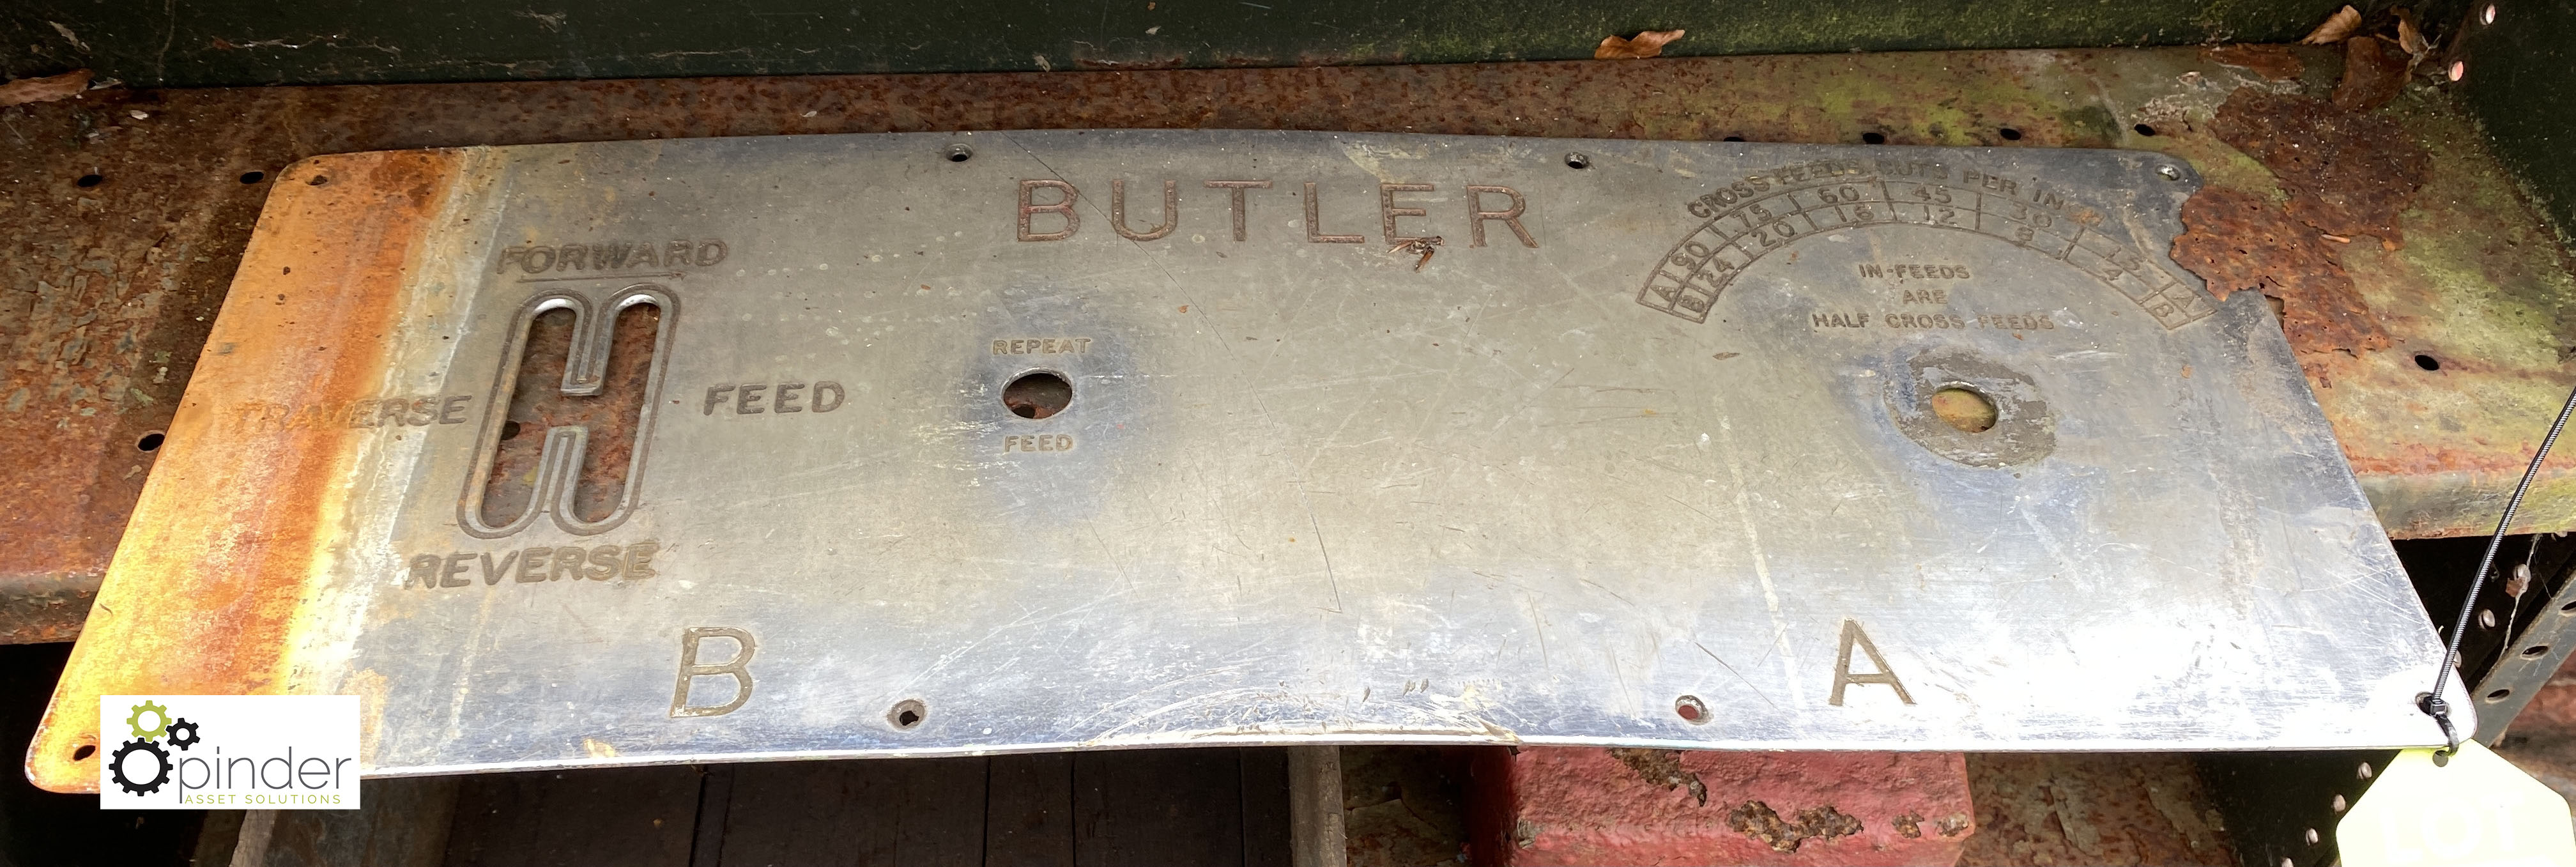 Butler Machine Plate (LOCATION: Sussex Street, Sheffield)